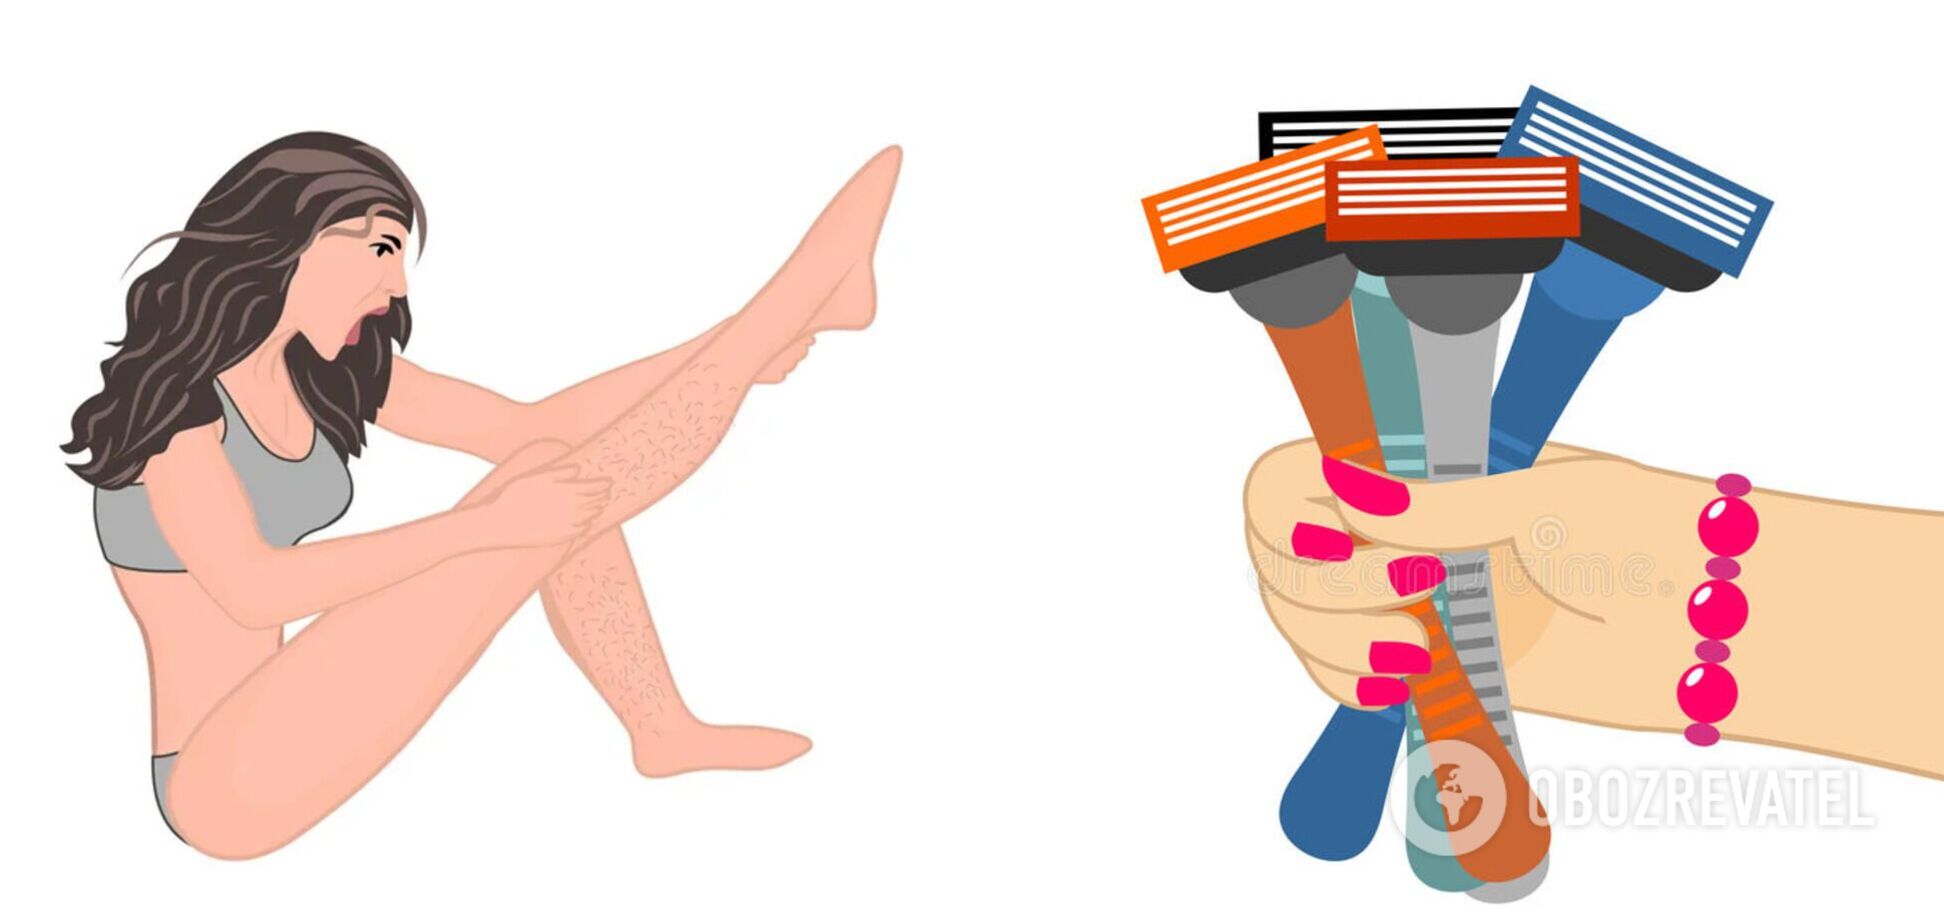 Майже всі роблять неправильно: блогерка показала, як треба голити ноги. Відео